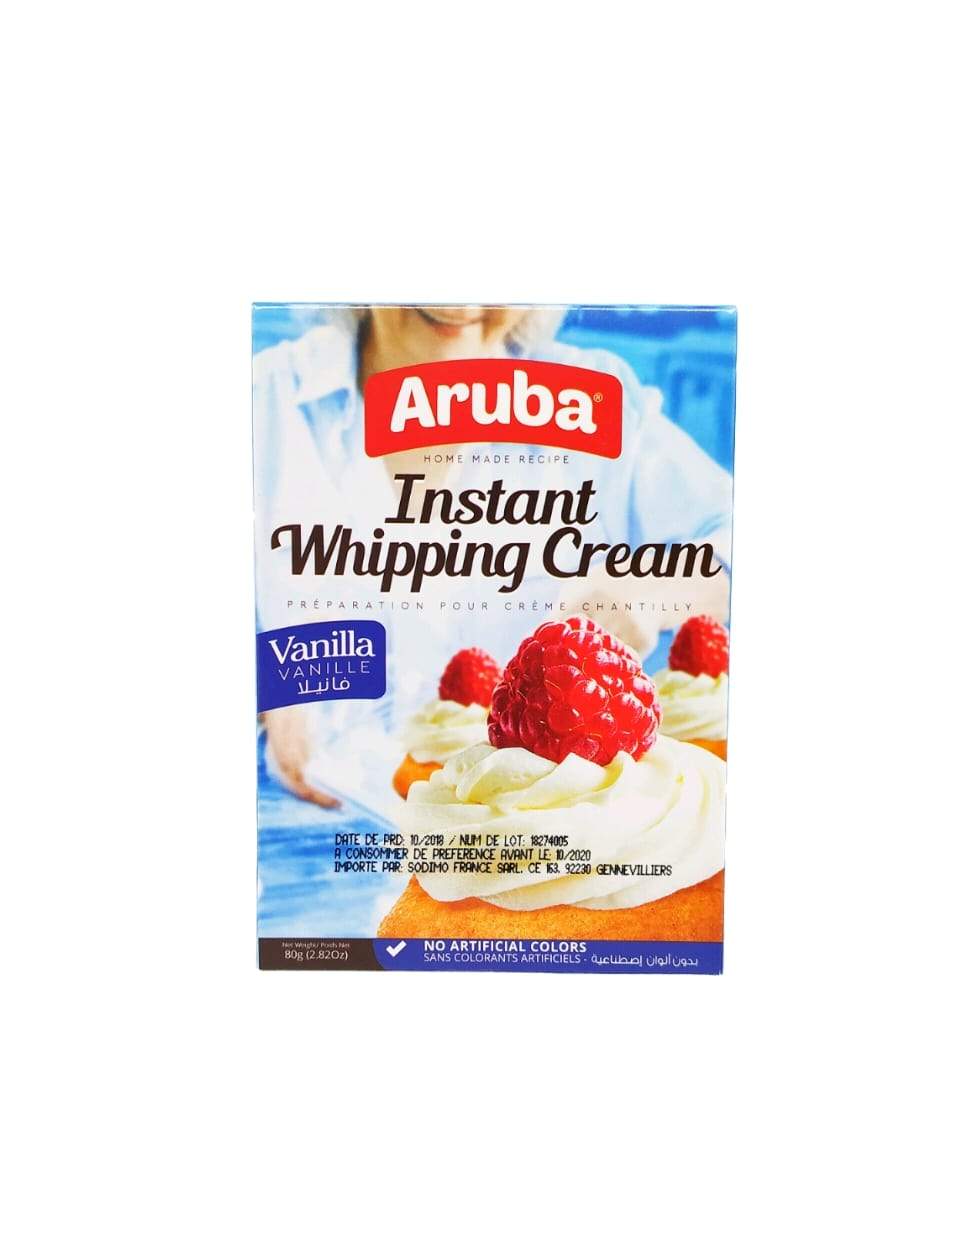 Produits orientaux en ligne : Aruba - crème chantilly